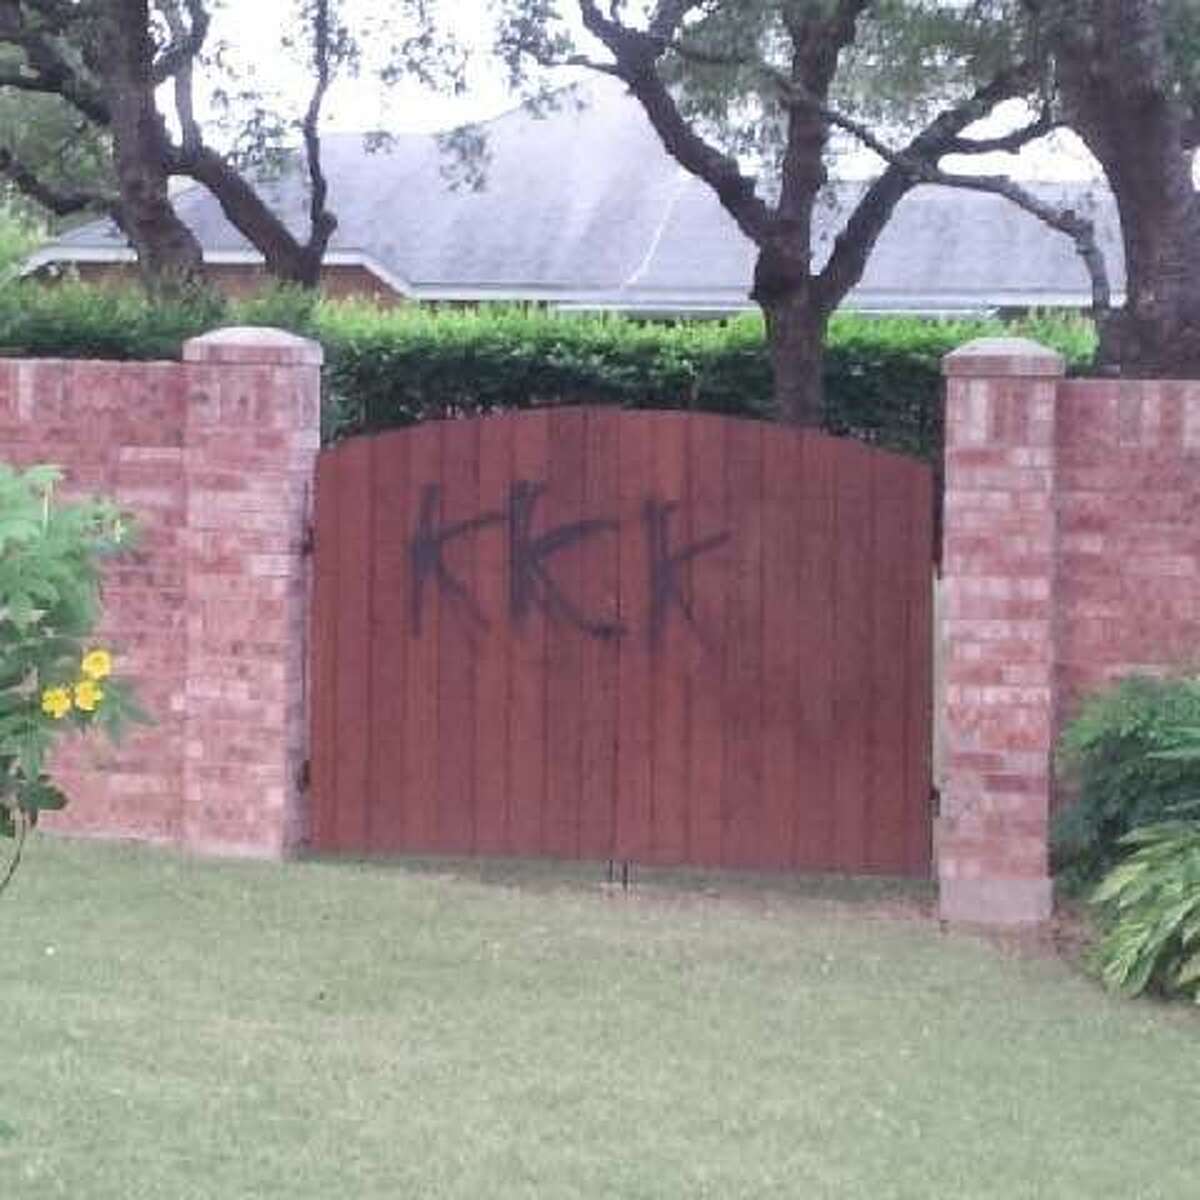 A Northwest Side community woke Wednesday morning to anti-Semitic vandalism.